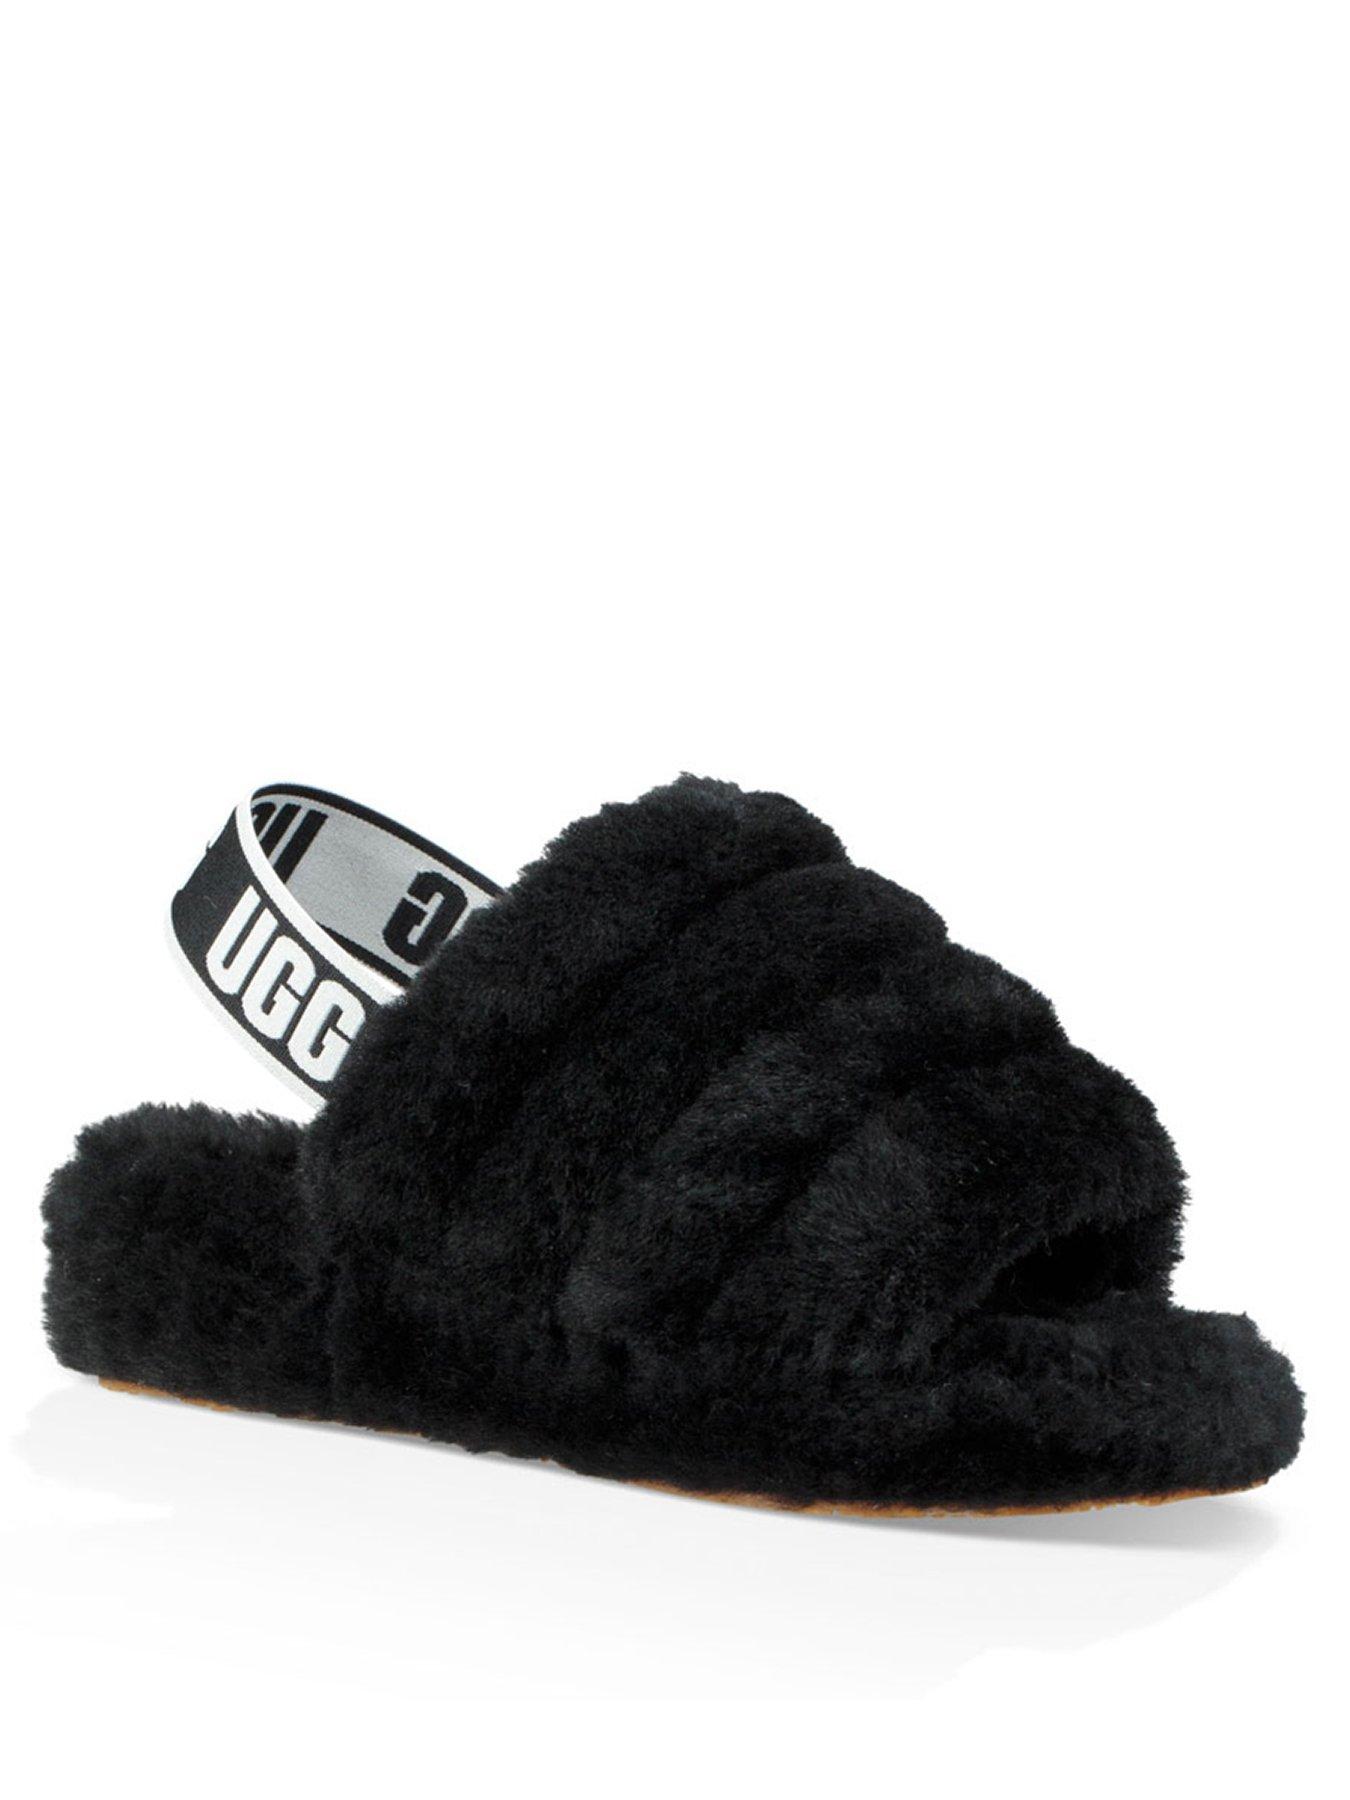 ugg slider slippers Cheaper Than Retail 